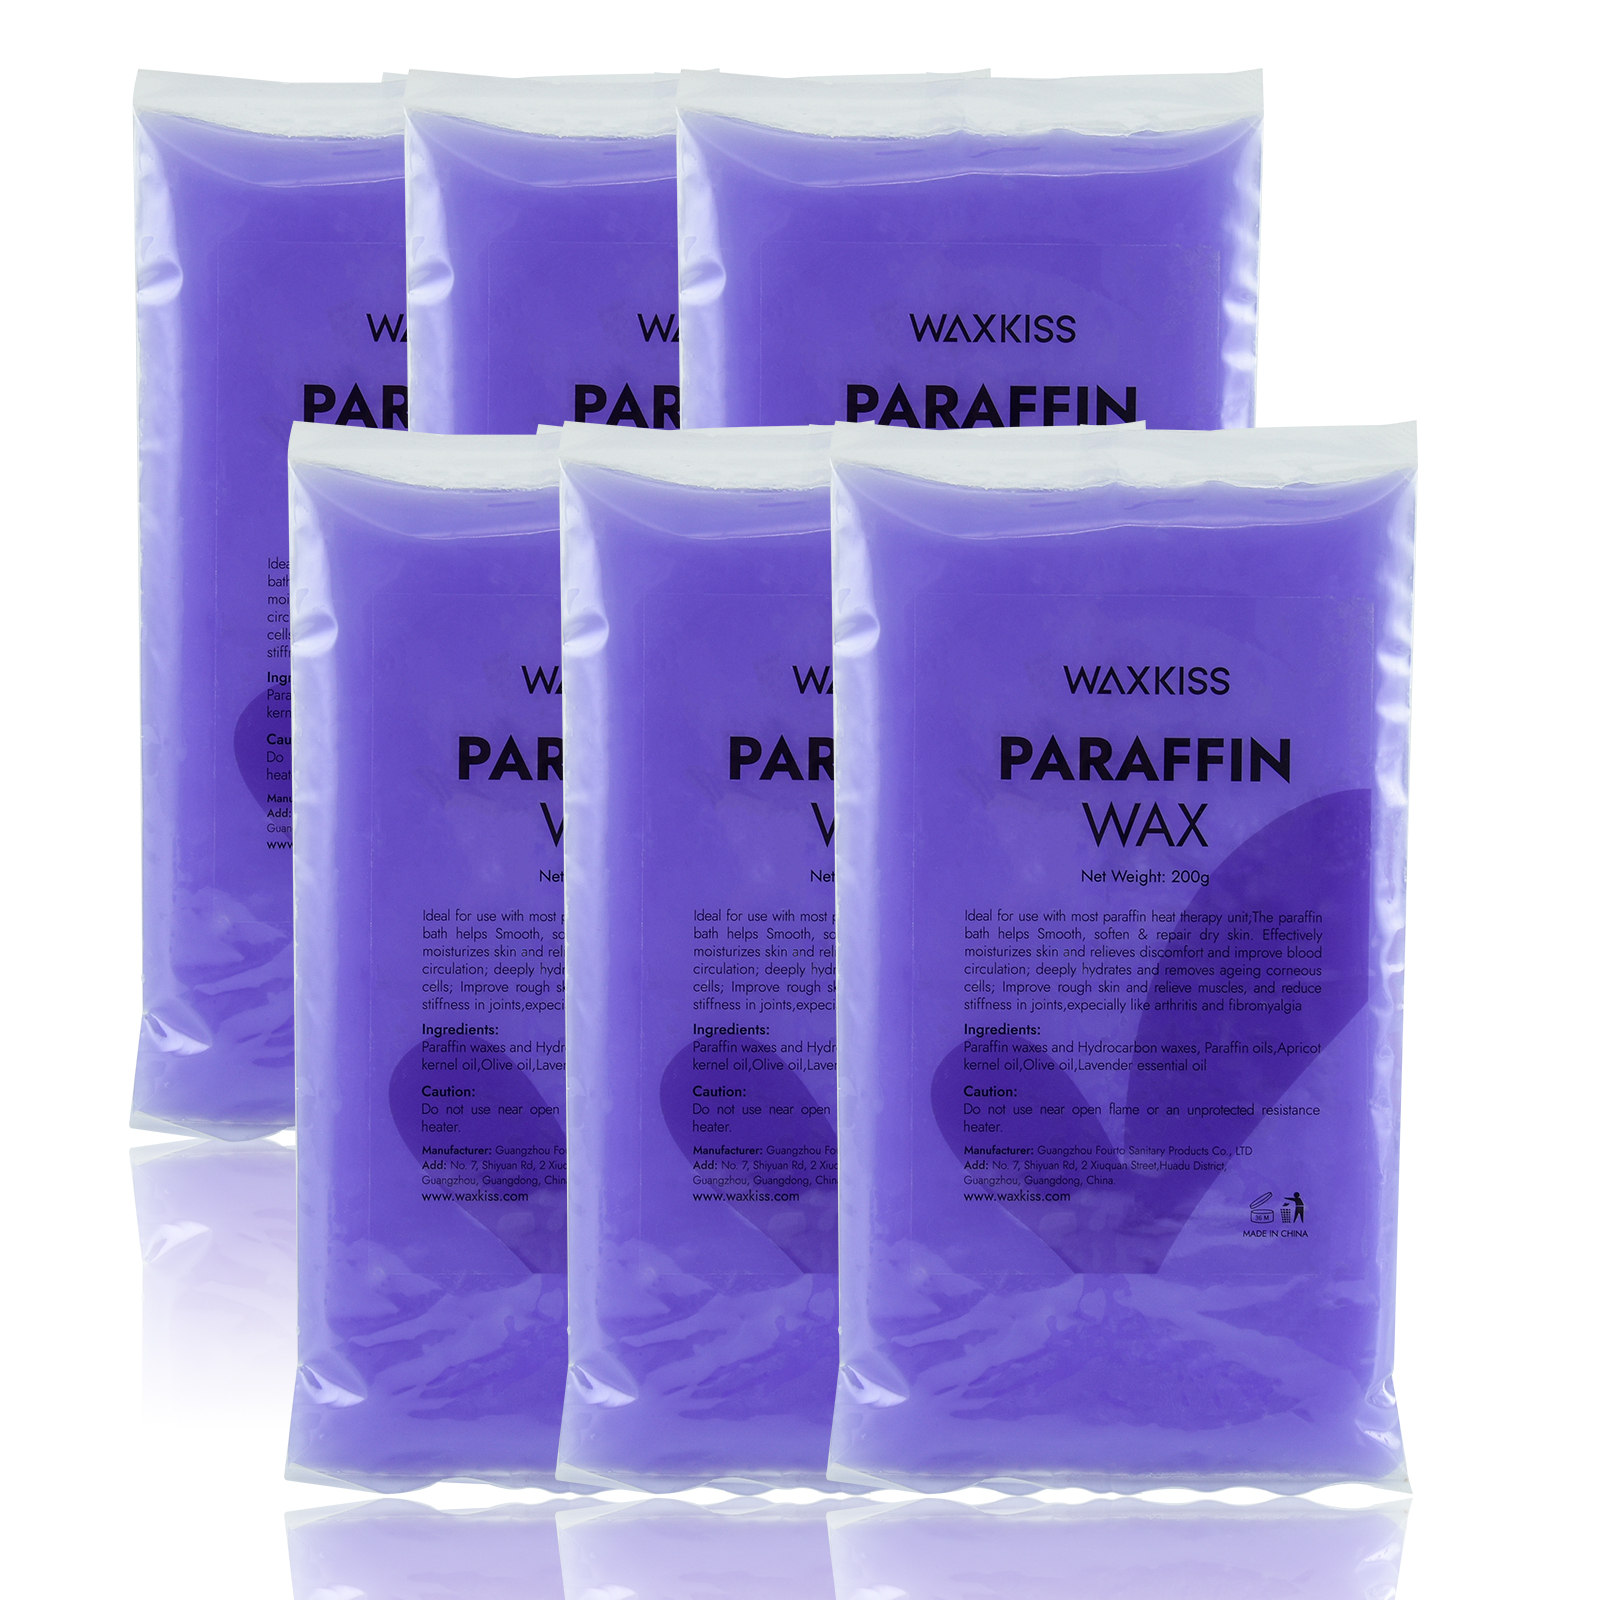 Paraffin wax - Orange 200g